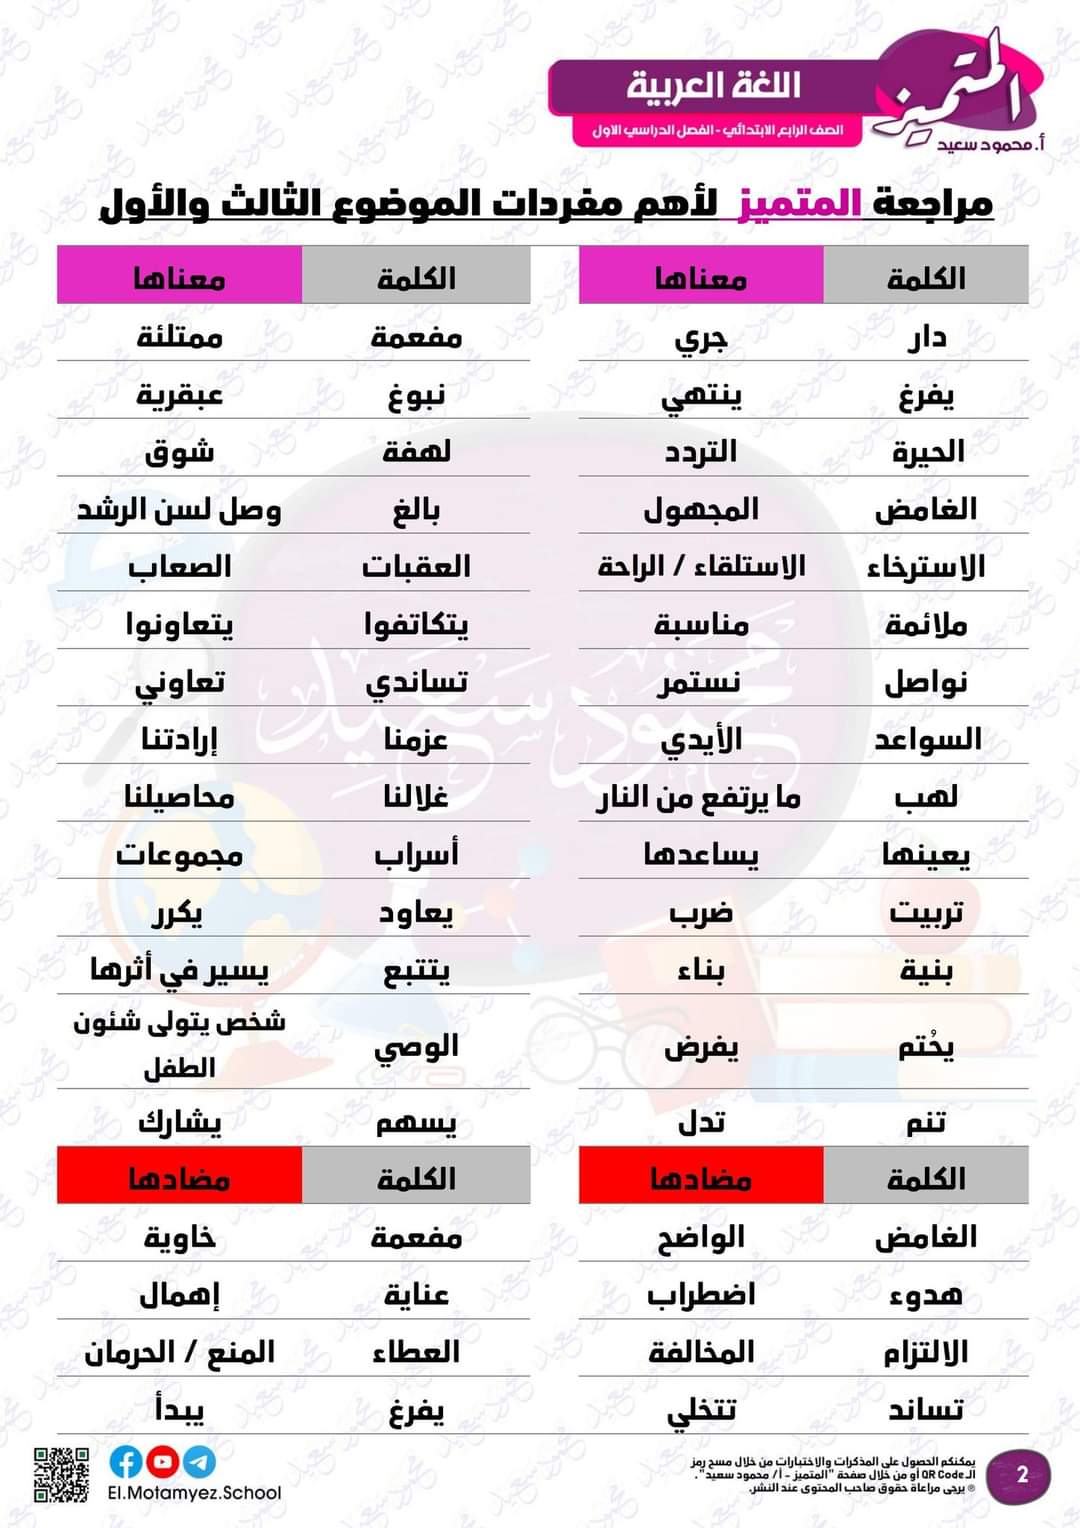 مراجعة المتميز مقرر نوفمبر لغة عربية الصف الرابع الابتدائي - تحميل مذكرات المتميز